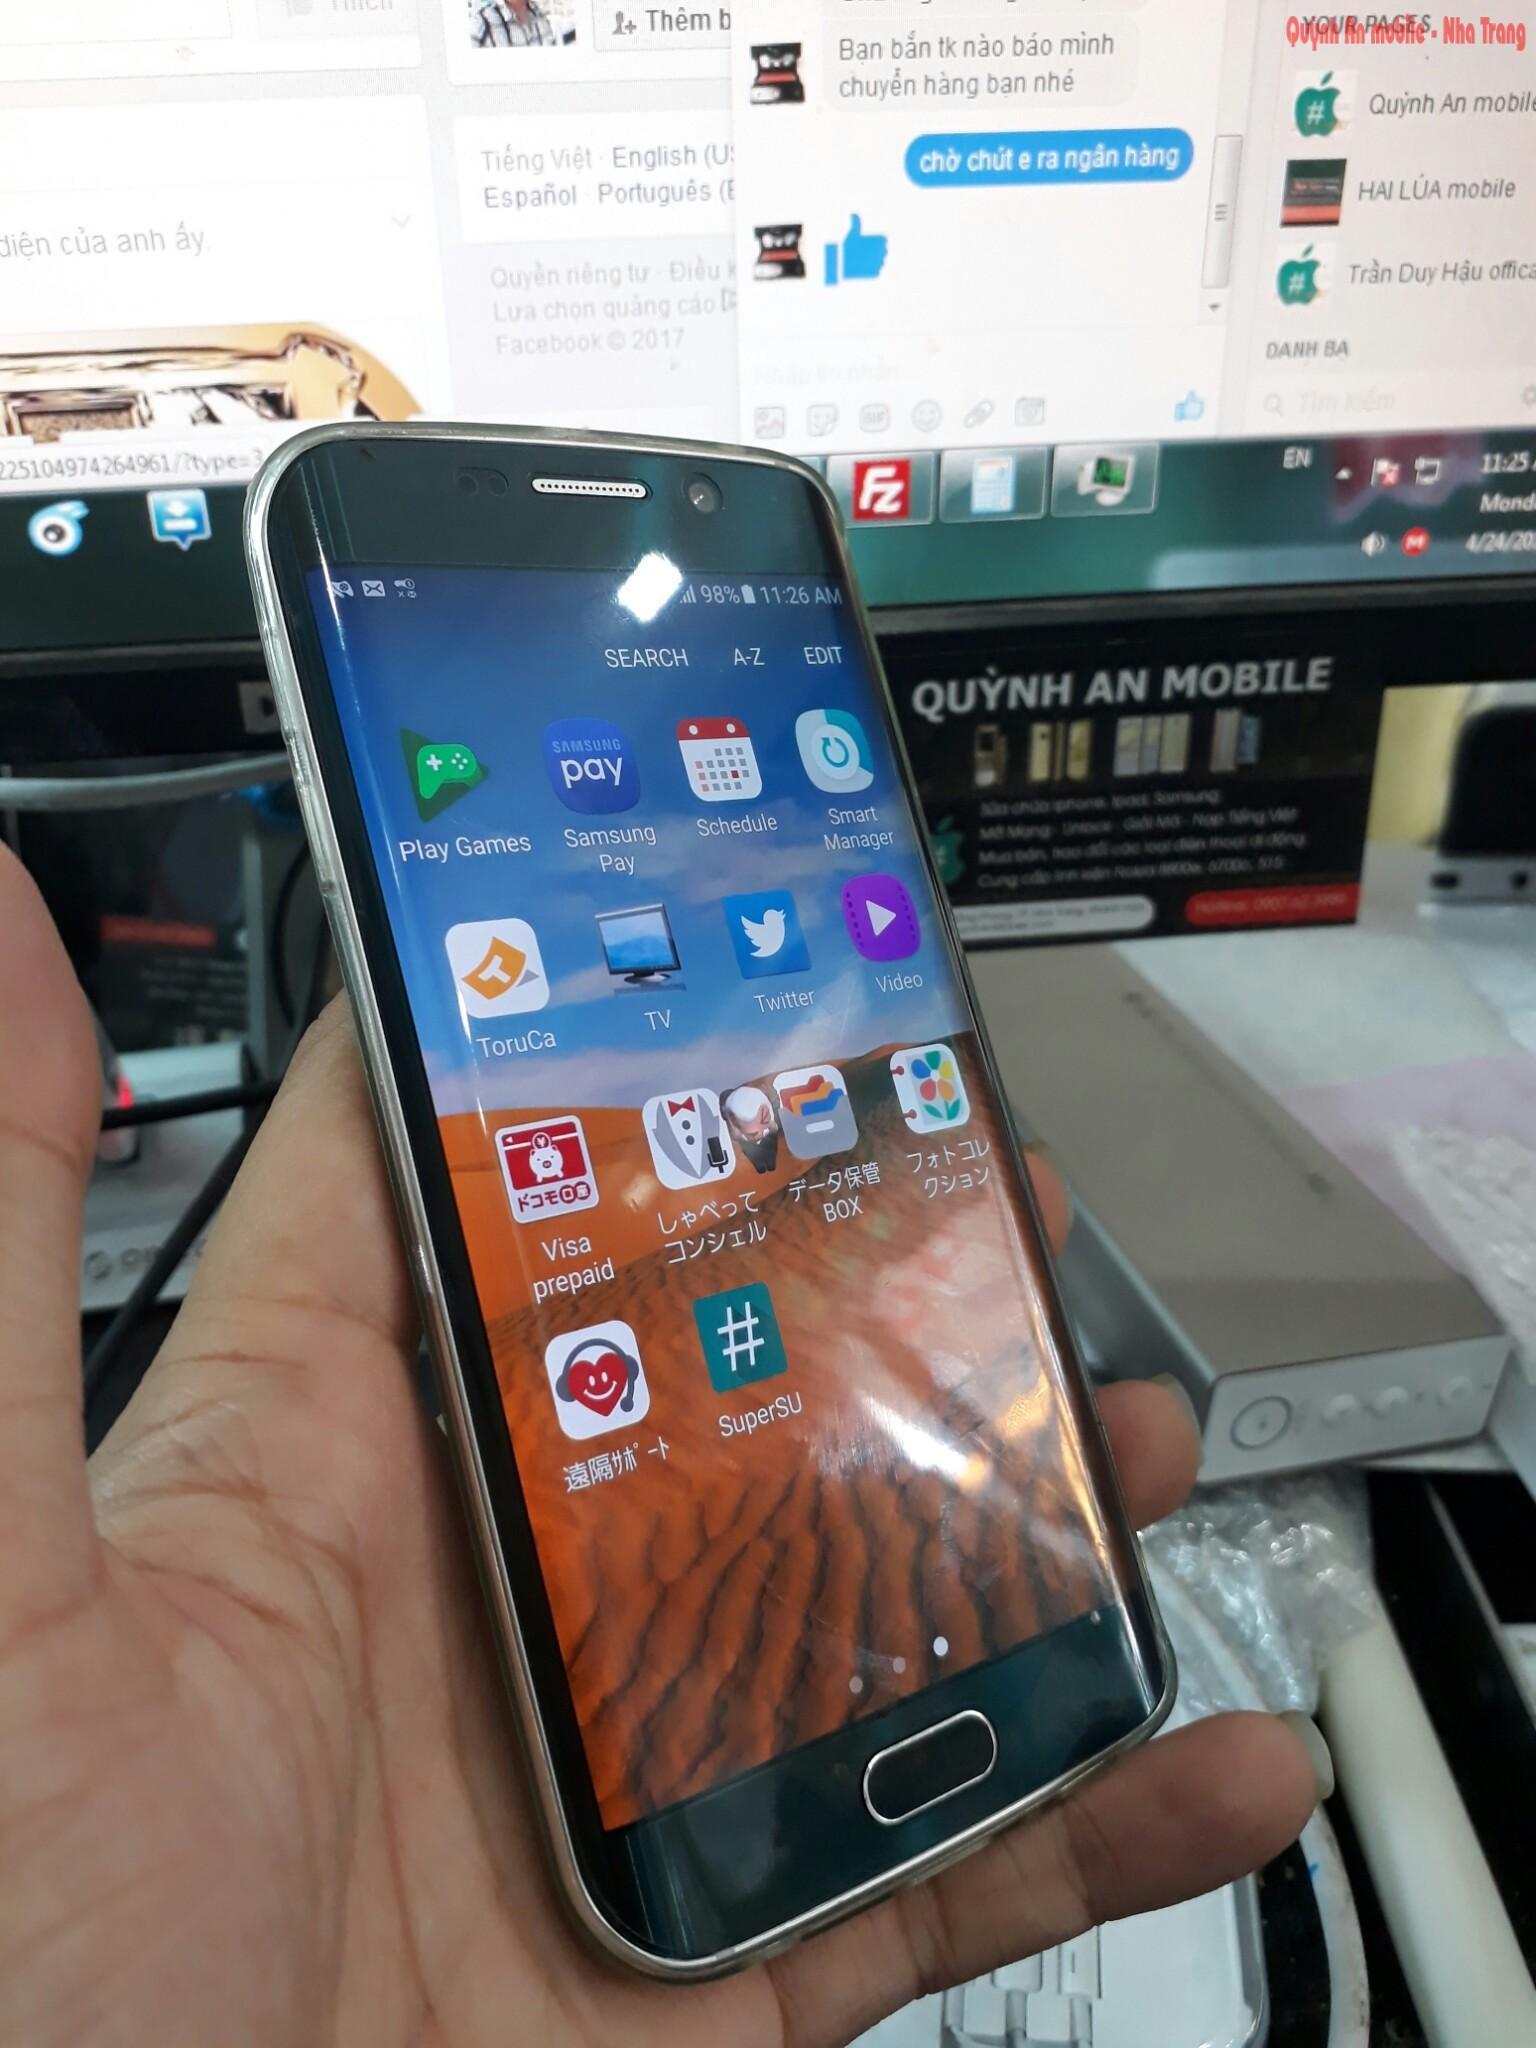 Máy Samsung galaxy S6 edge SC-04G xách tay về không cớ tiếng Việt và rất nhiều ứng dụng rác từ nhà mạng